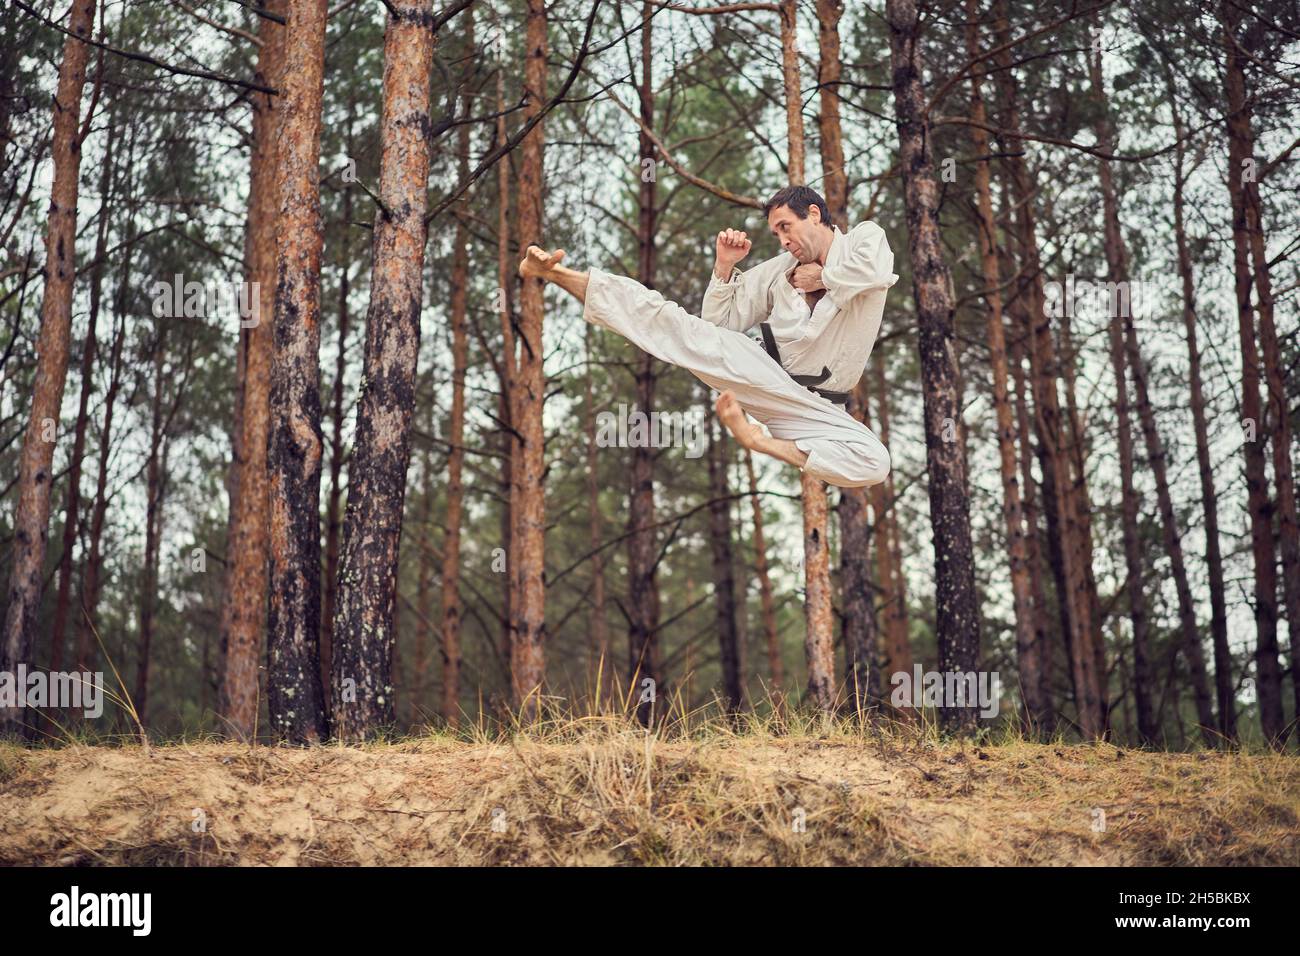 Karate uomo in un vecchio kimono e cintura nera allenamento salto laterale calcio nella foresta di pini. Concetto di arti marziali. Pineta sullo sfondo. Foto Stock